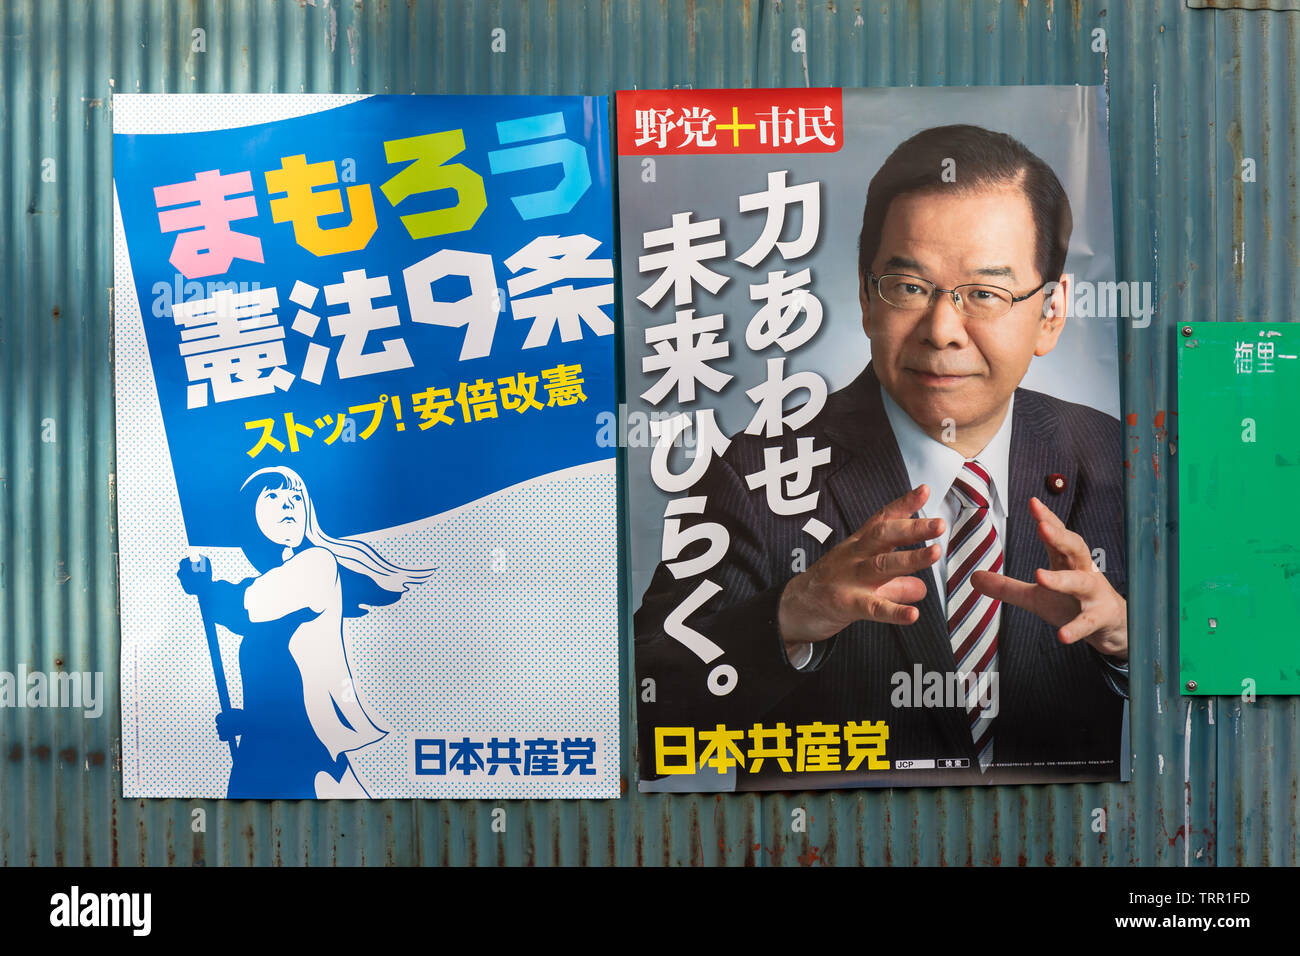 Japanische Kommunistische Partei Plakate; Rechts: Kazuo Shii, Vorsitzender der japanischen Kommunistischen Partei seit 2000 Stockfoto